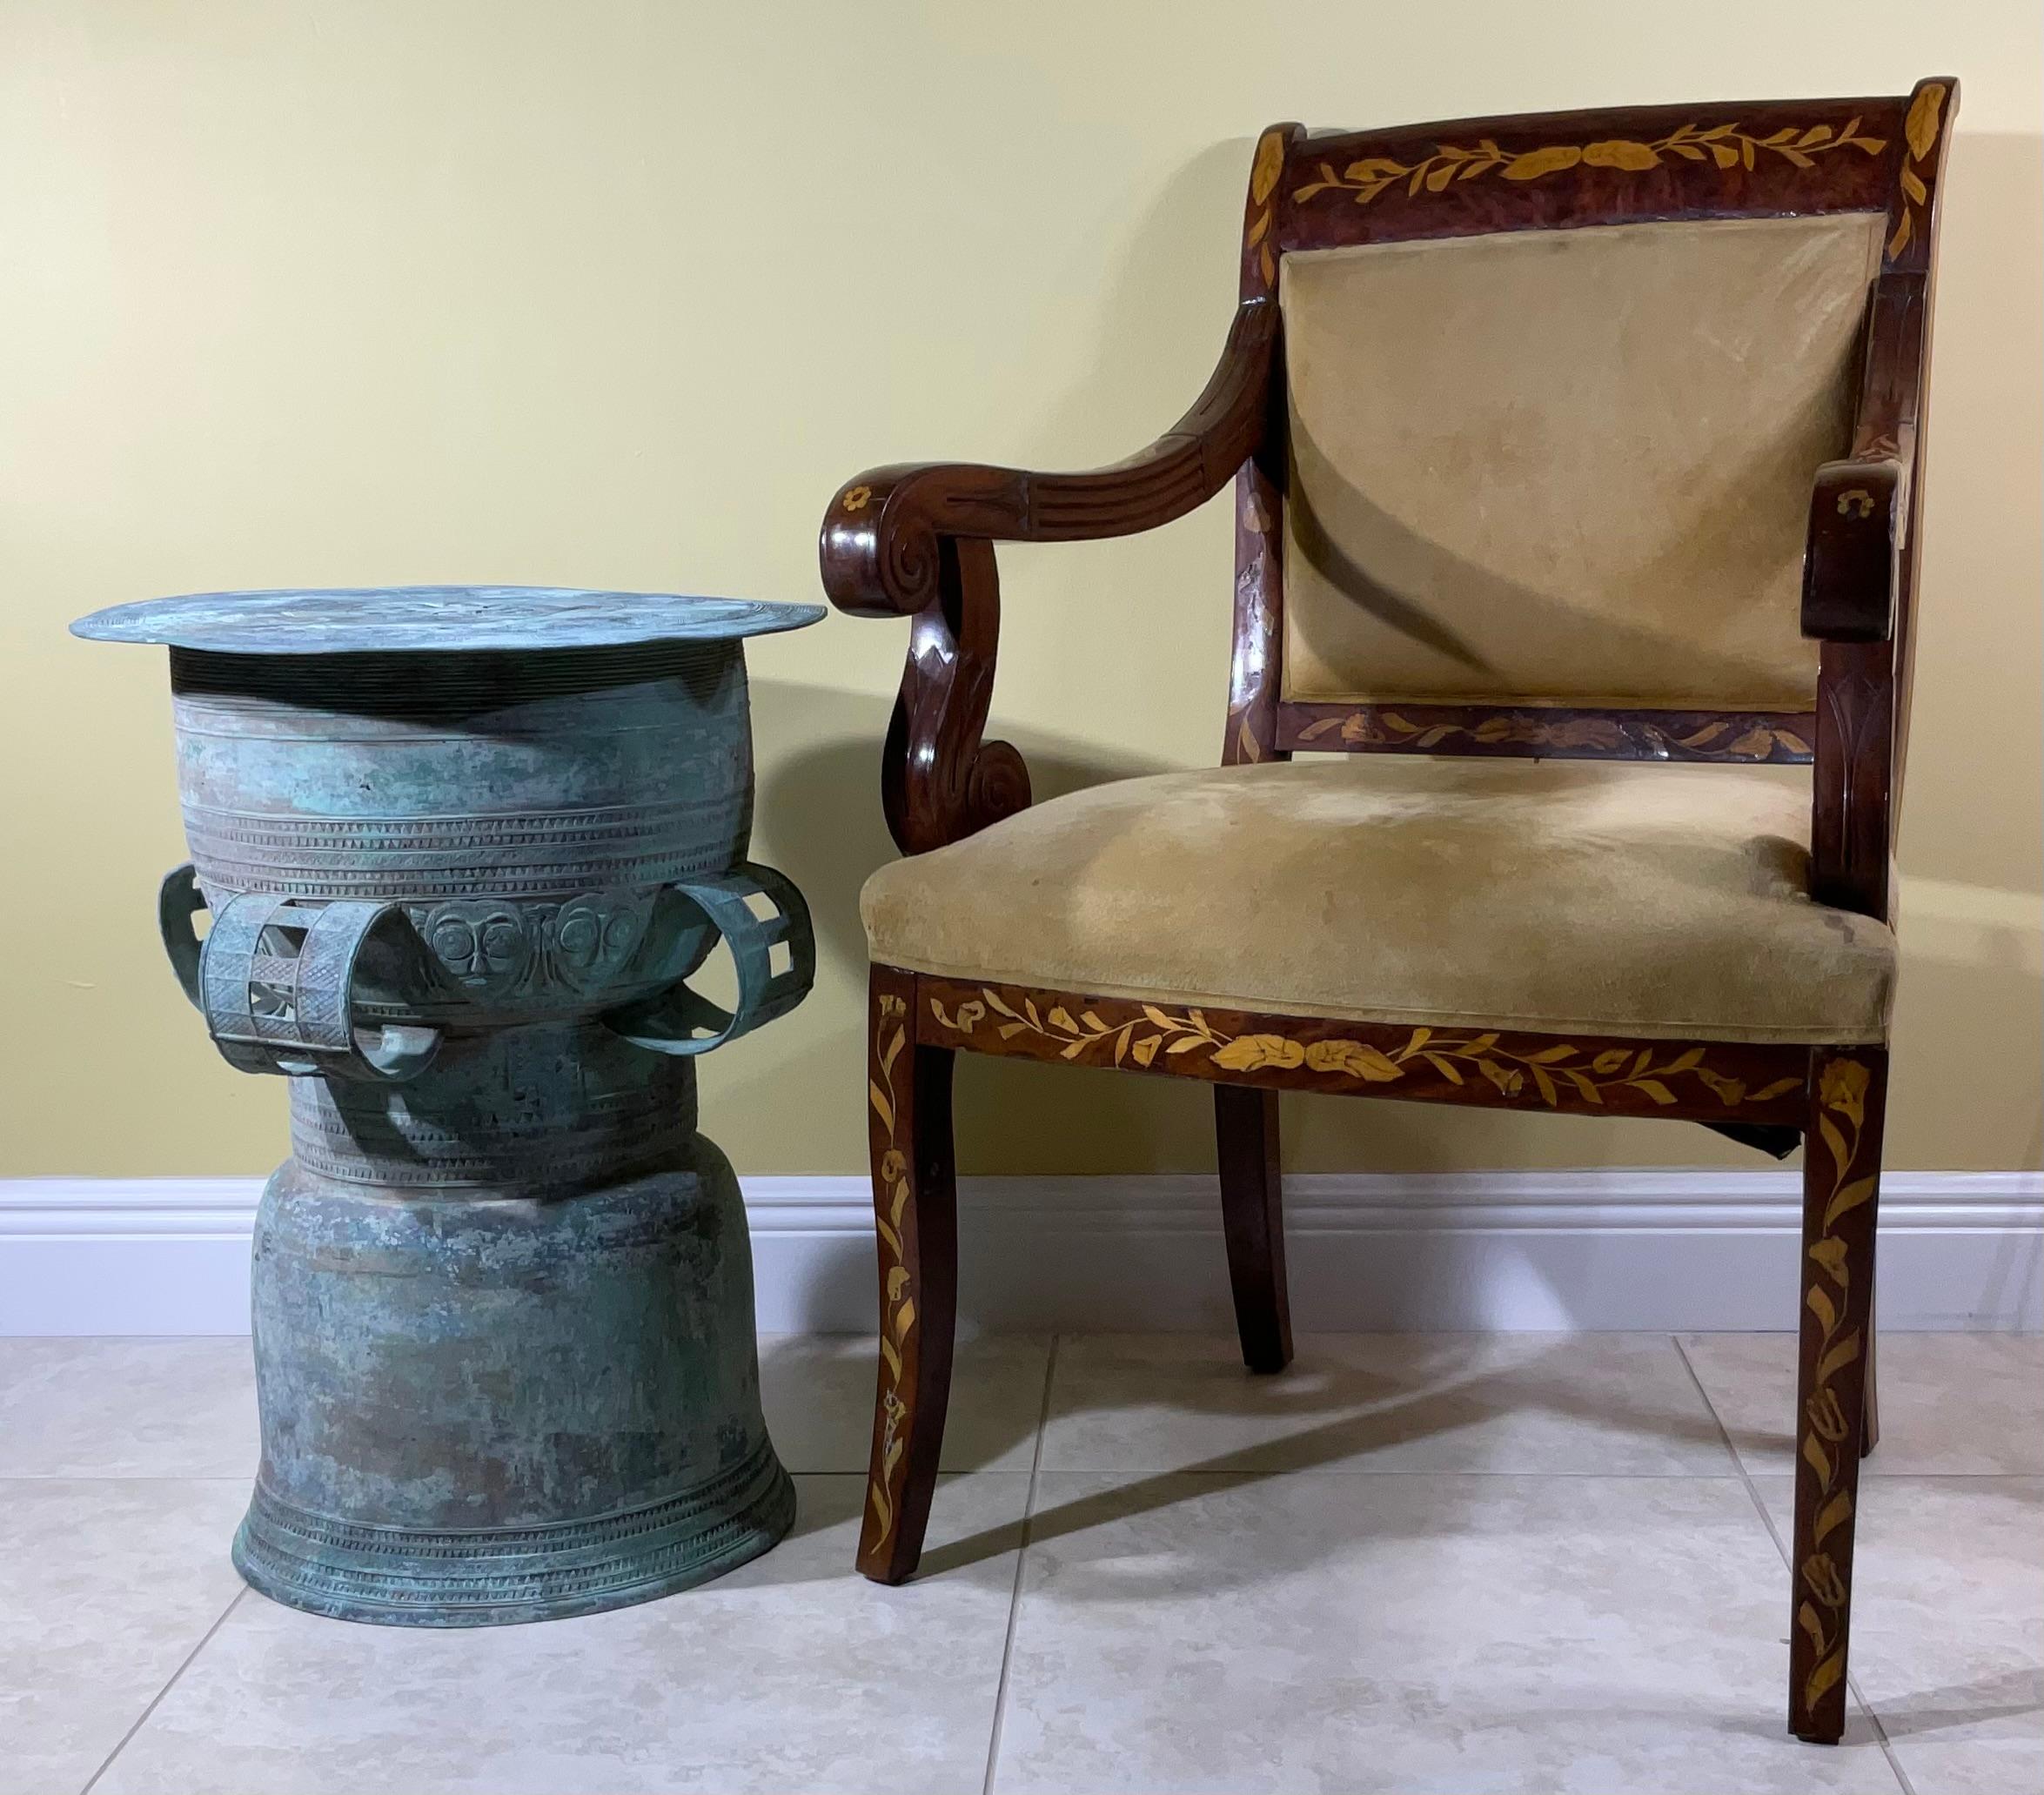 Table tambour de pluie en bronze antique, quatre poignées latérales, décorative avec des motifs de visages mystérieux autour des côtés, belle patine oxydée, grand objet d'art pour l'exposition, à l'intérieur ou à l'extérieur.